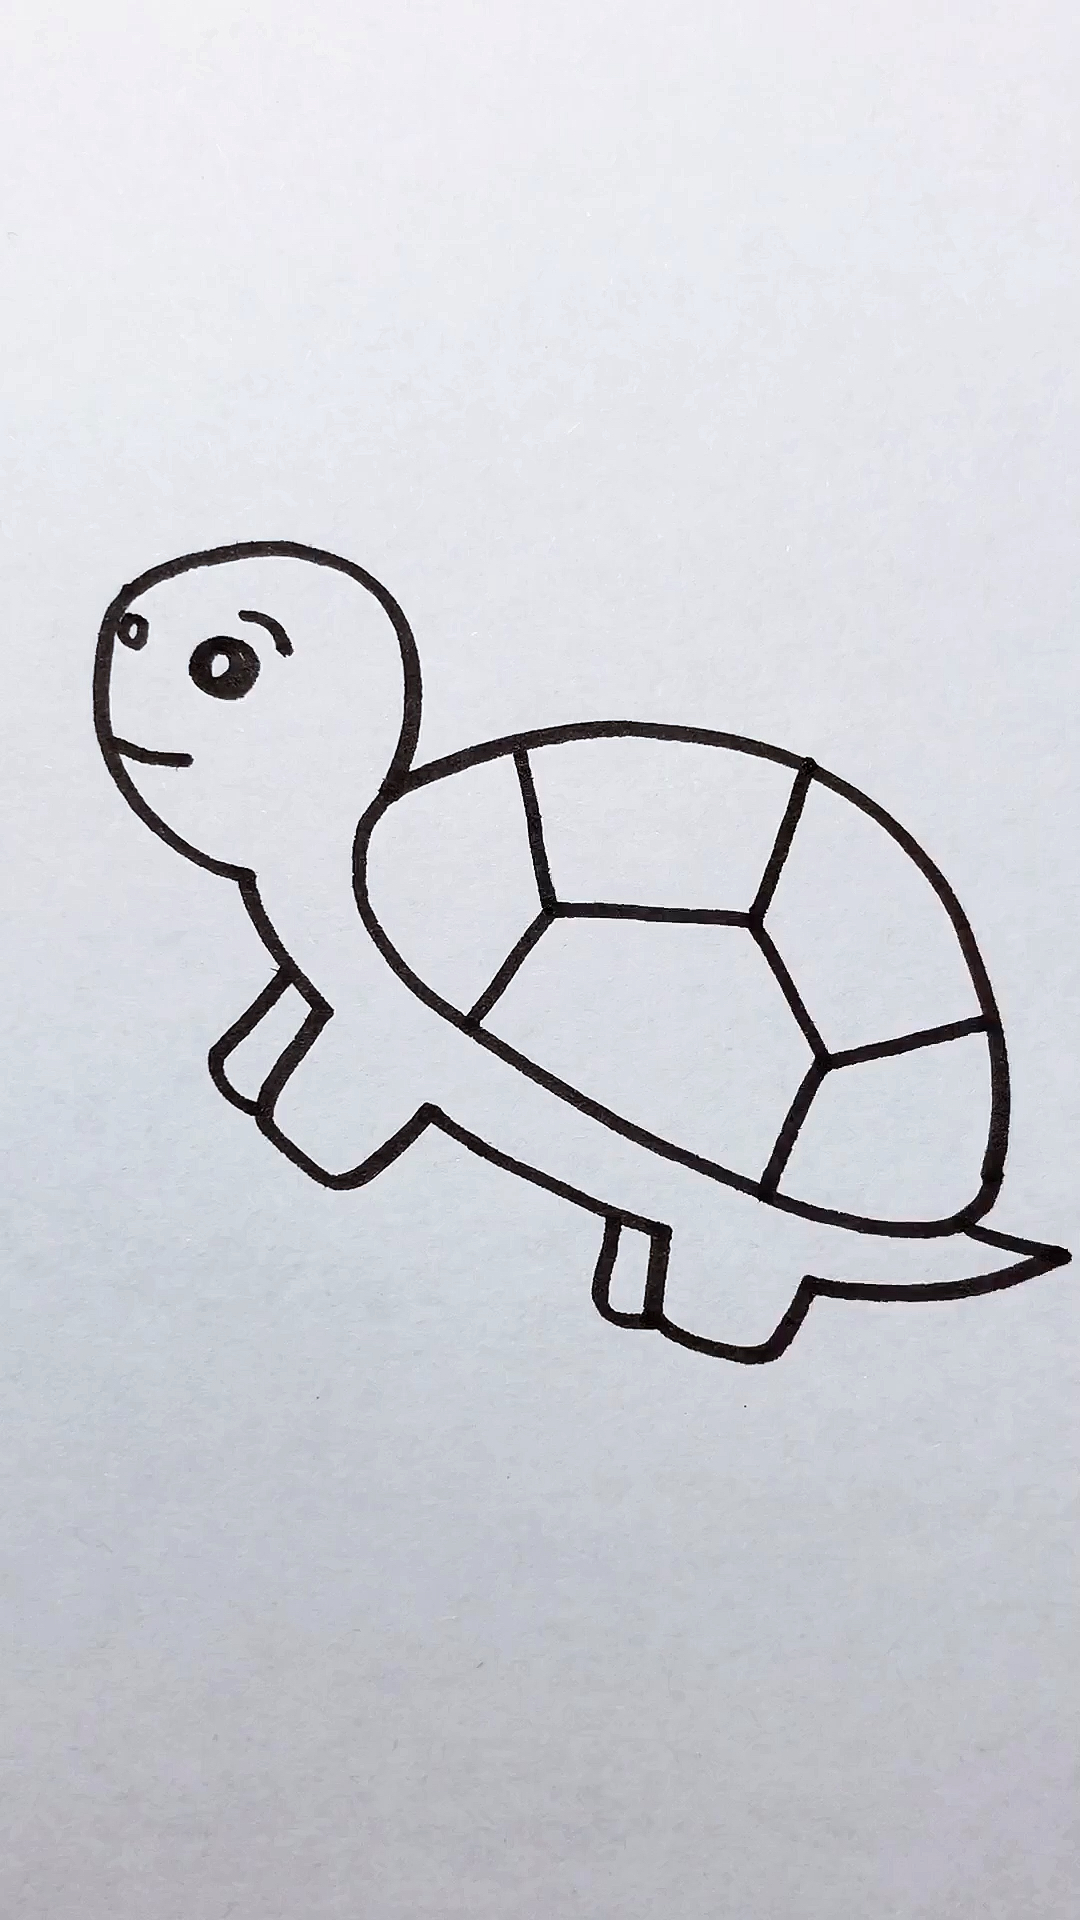 乌龟画法 简笔画图片